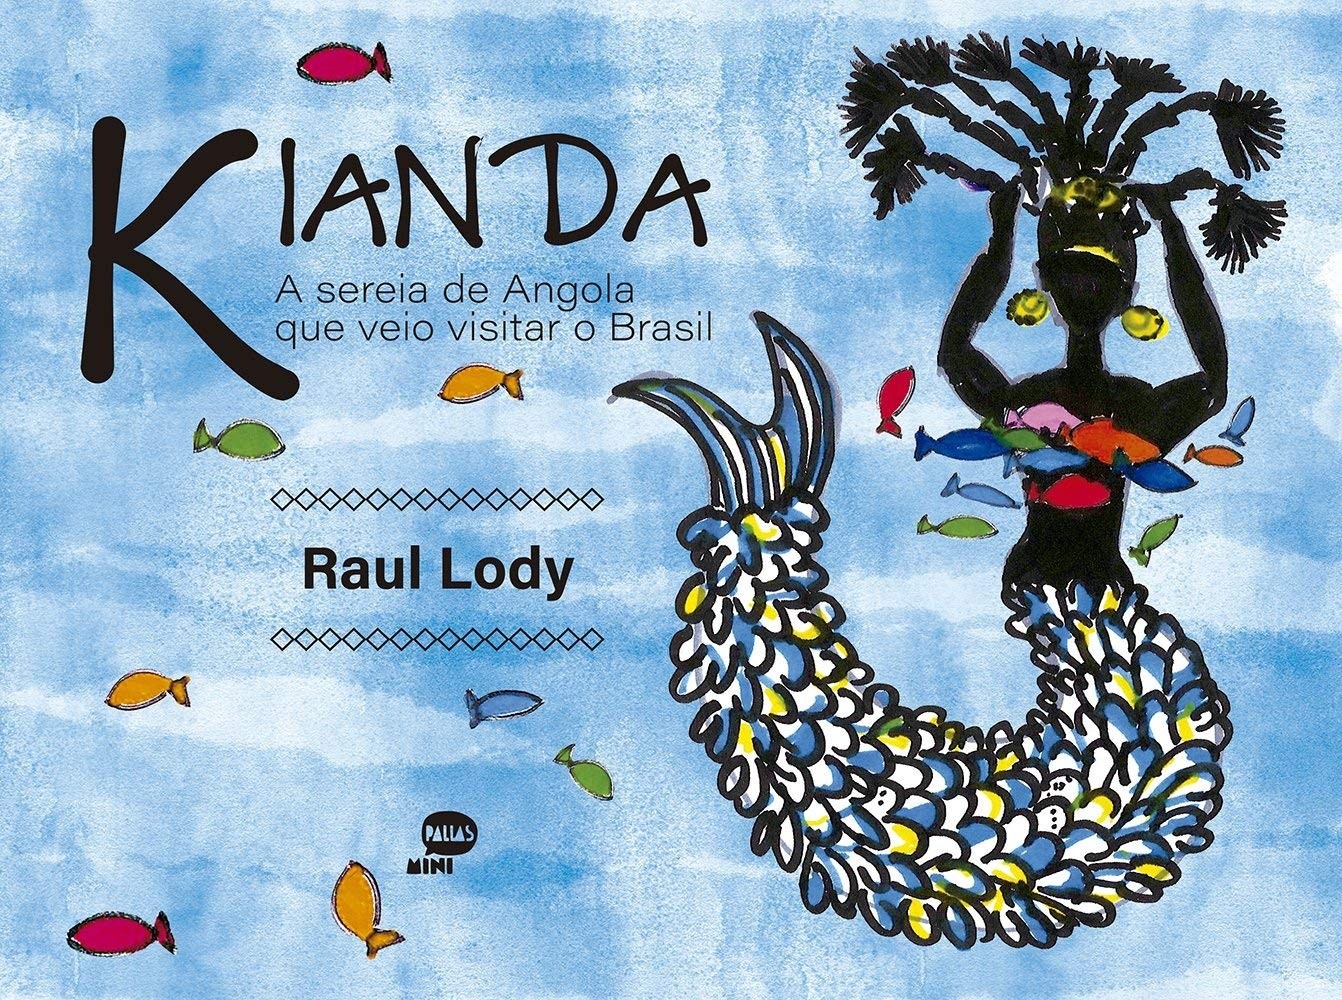 Kianda A sereia de Angola que veio visitar o Brasil